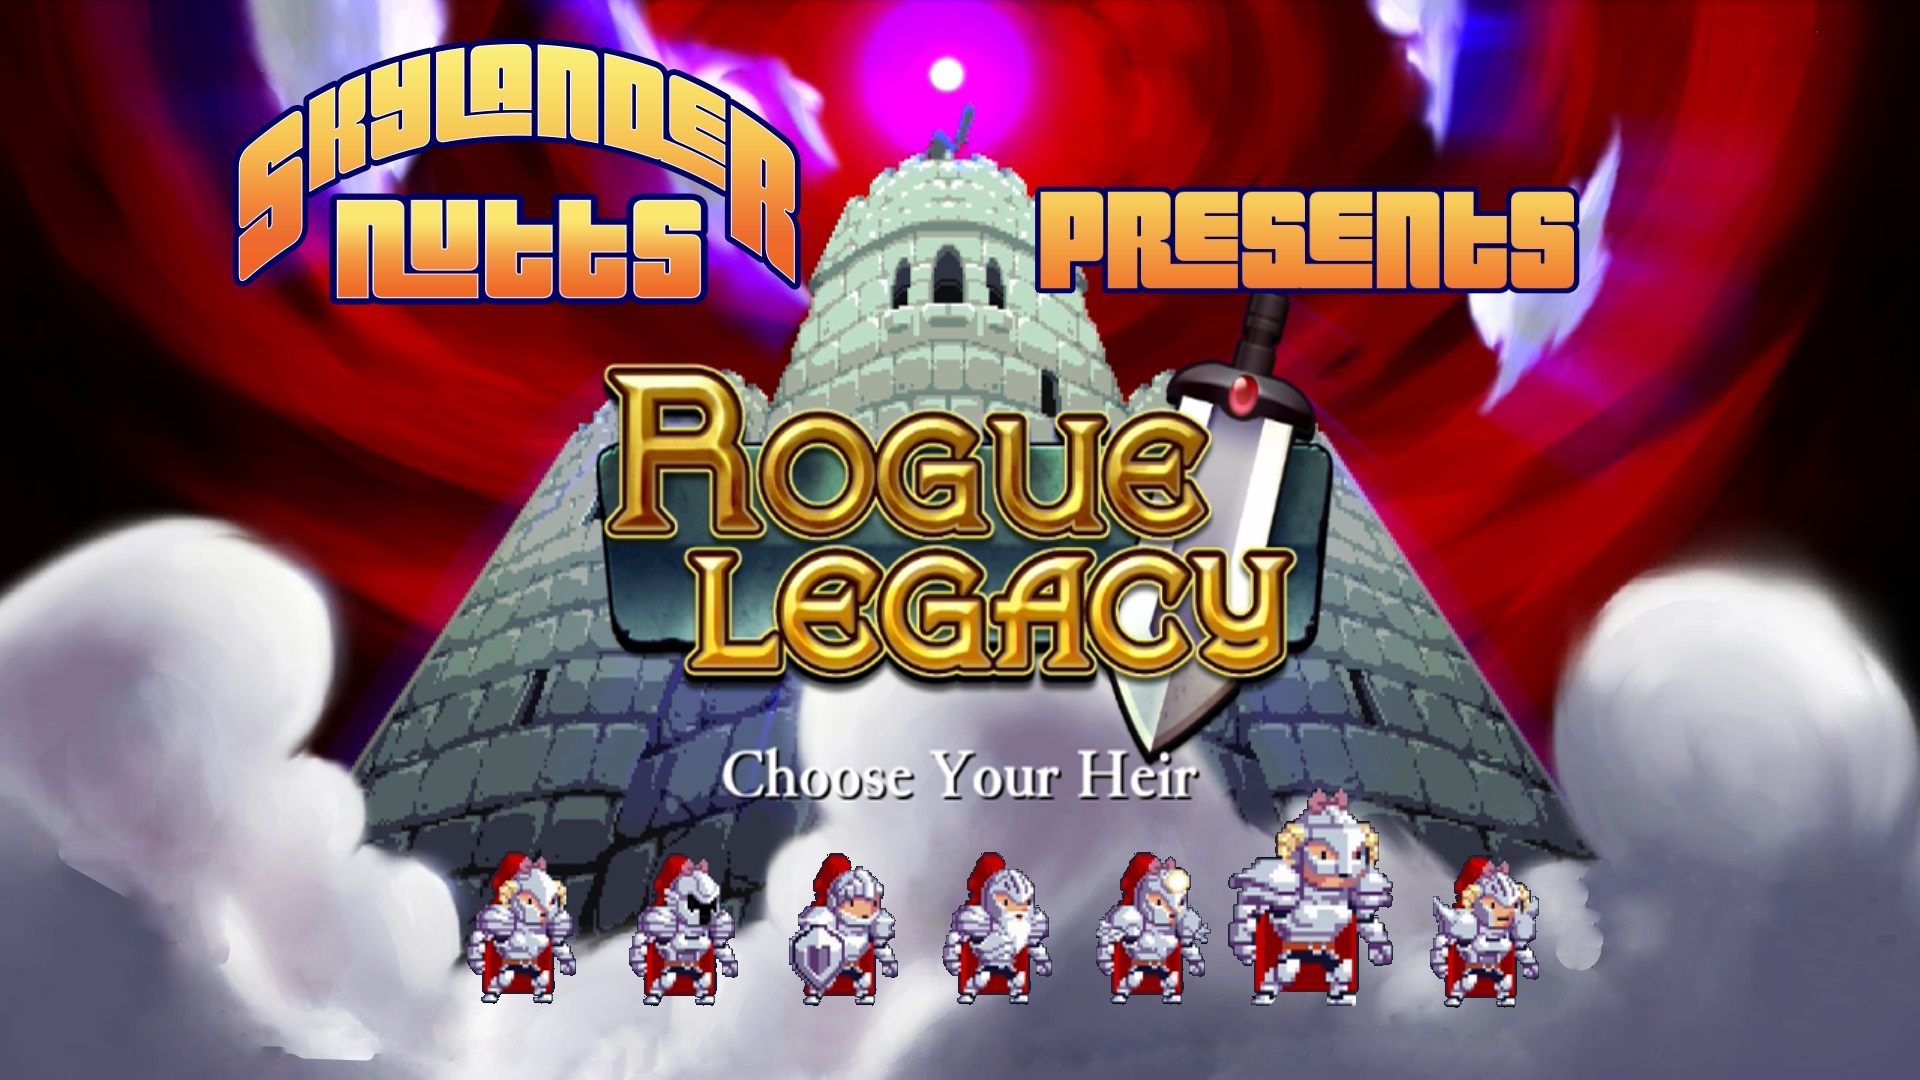 SkylanderNutts Presents Rogue Legacy